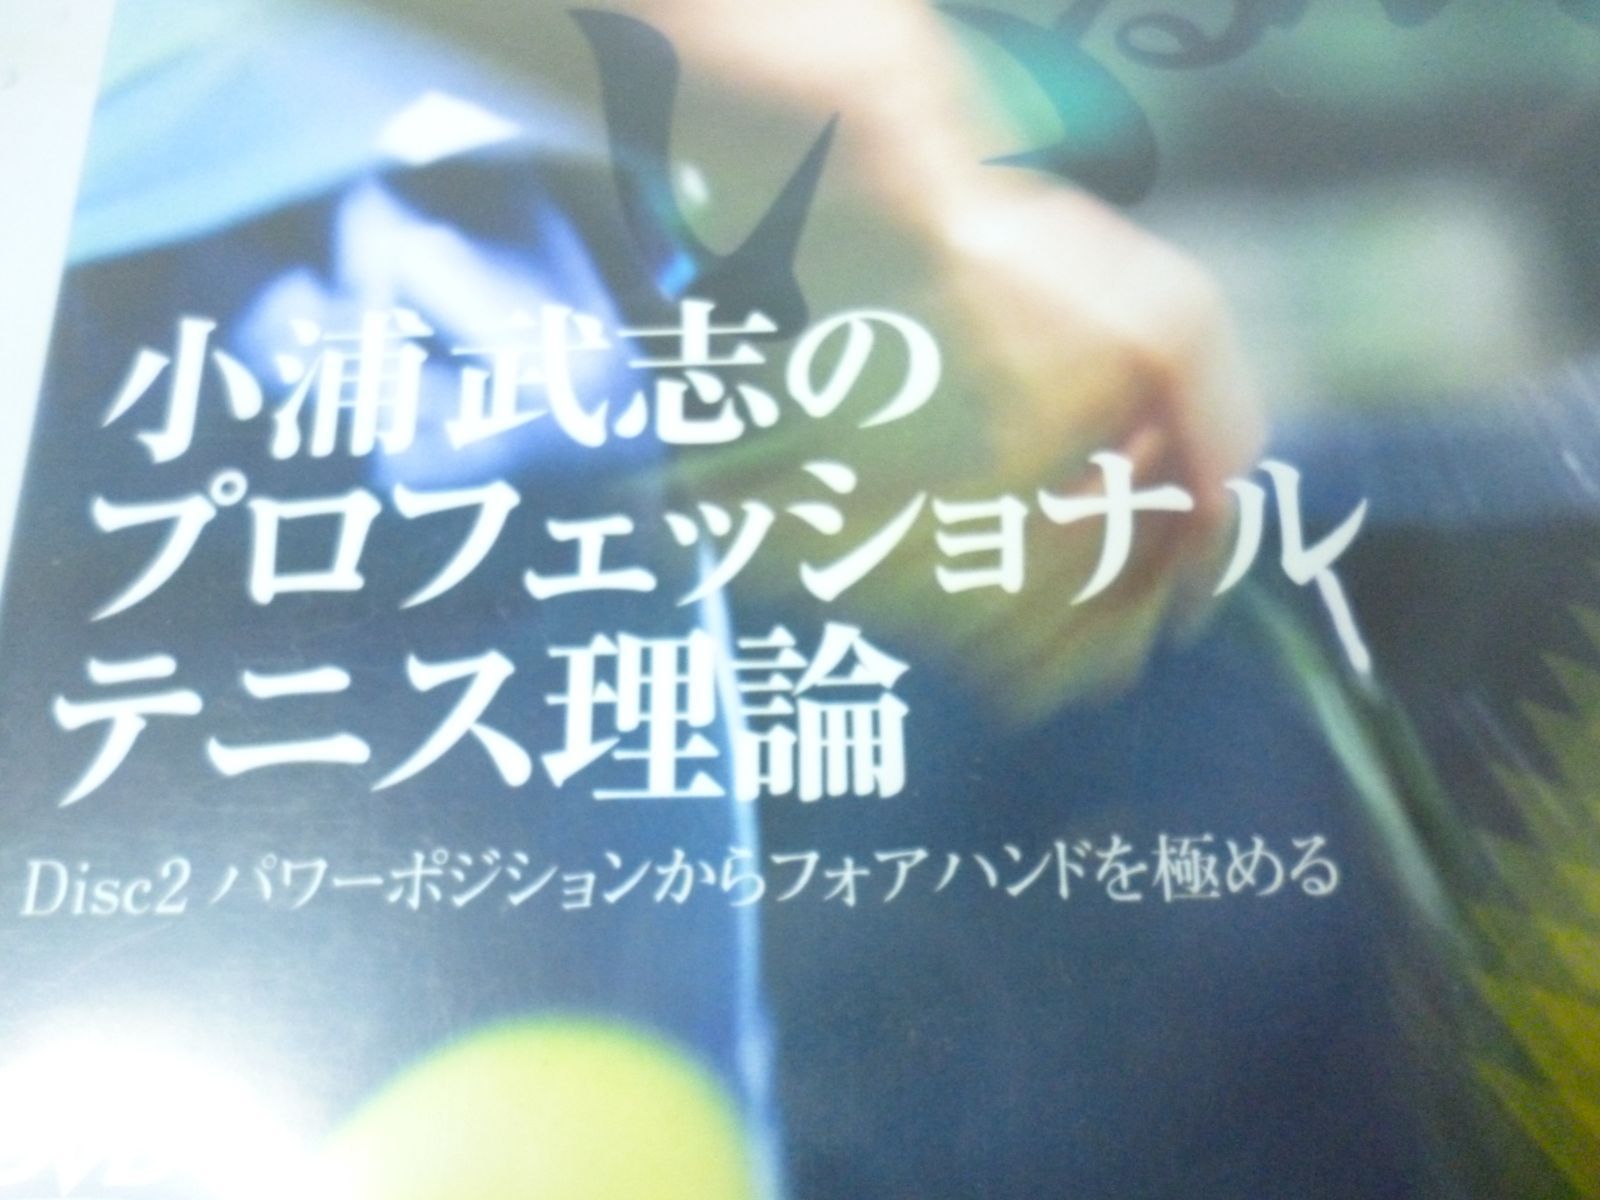 小浦武志のプロフェショナルテニス理論 - スポーツ/フィットネス